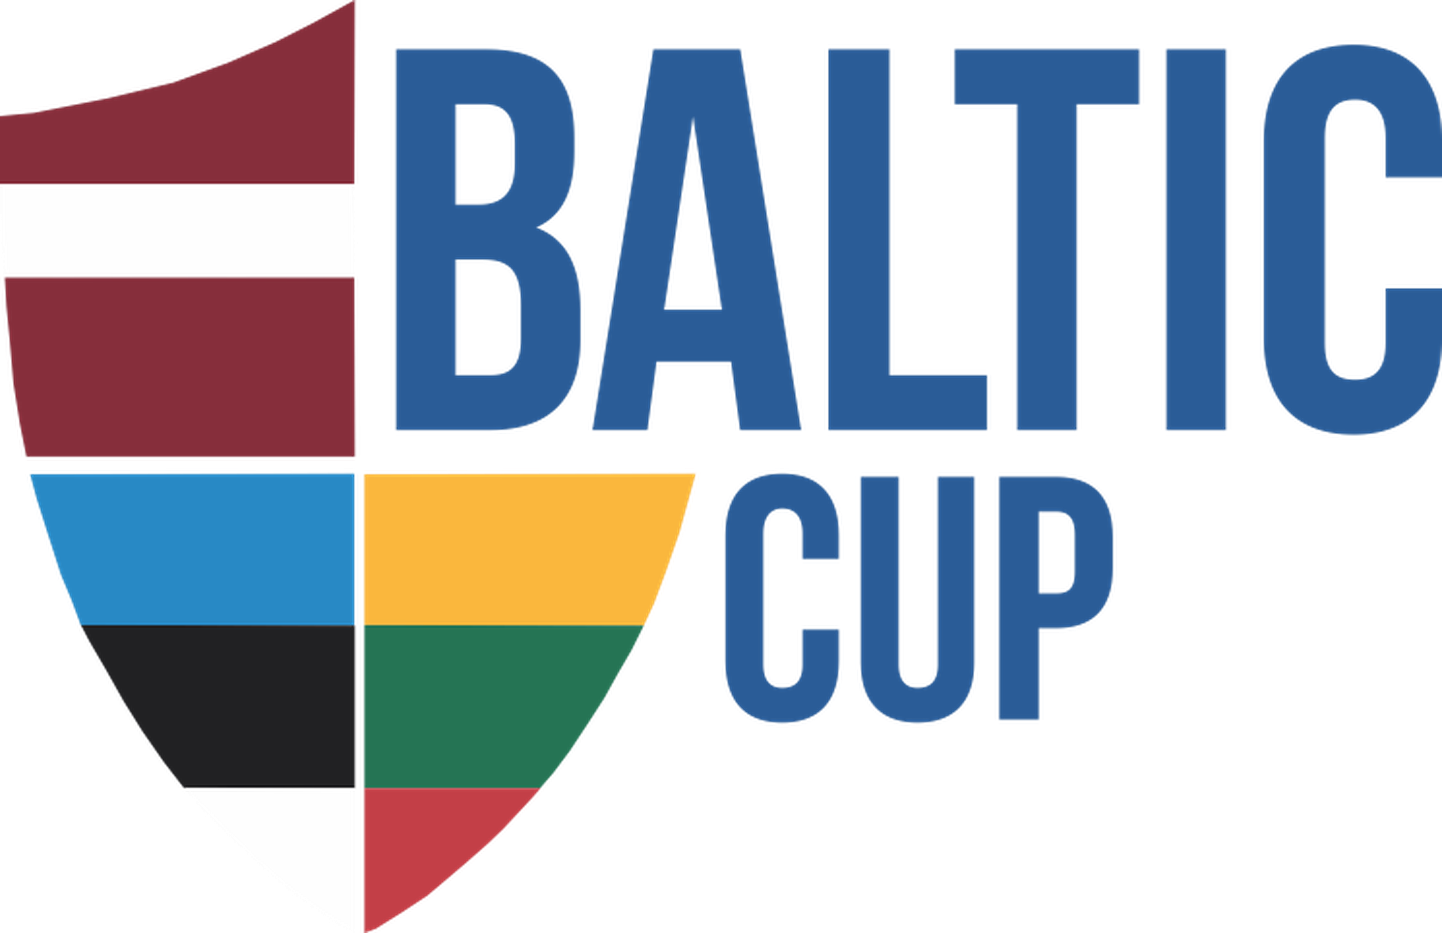 Balti turniiri uus logo.